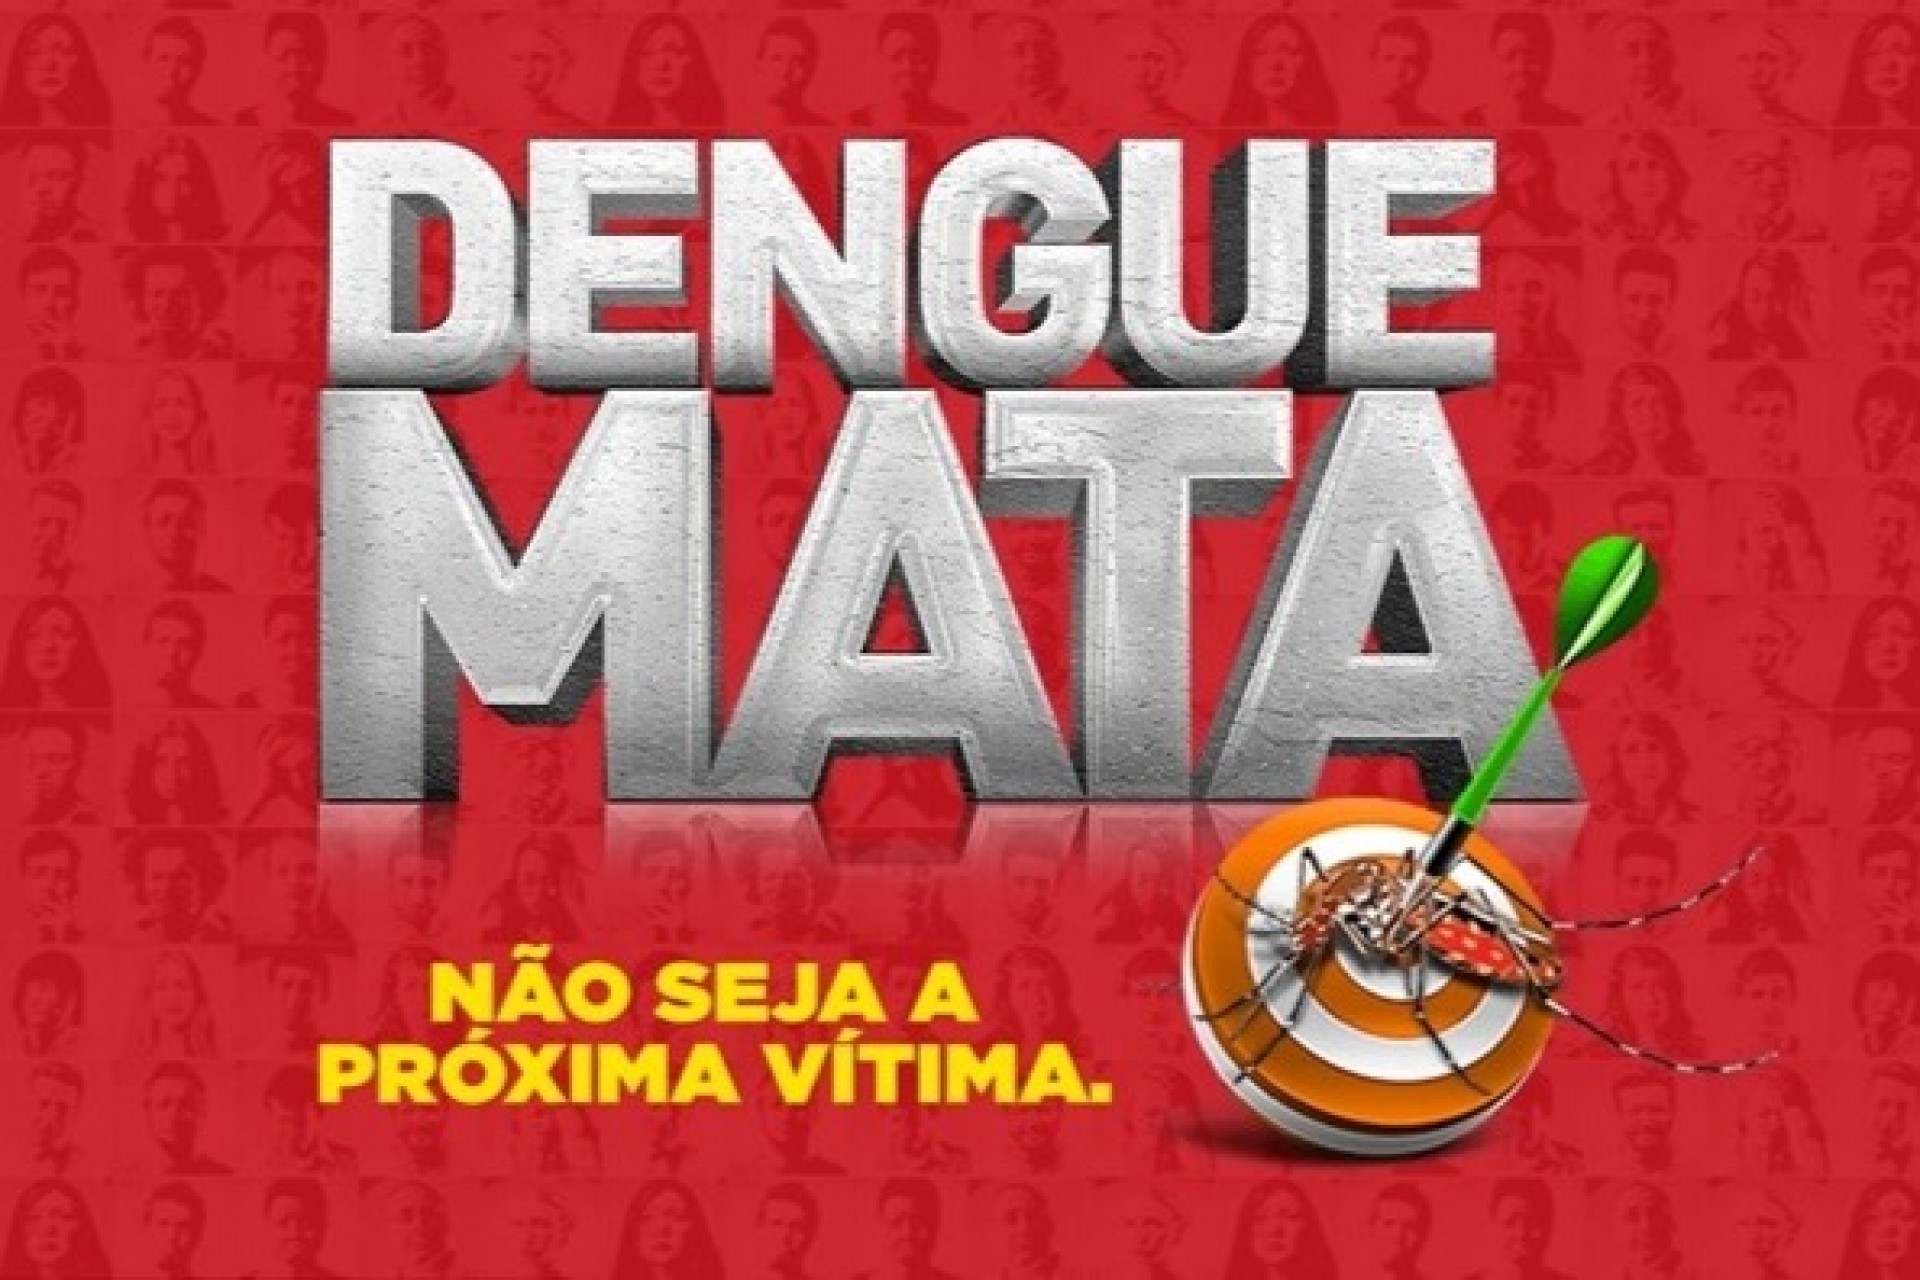 16 casos de dengue confirmados em Missal